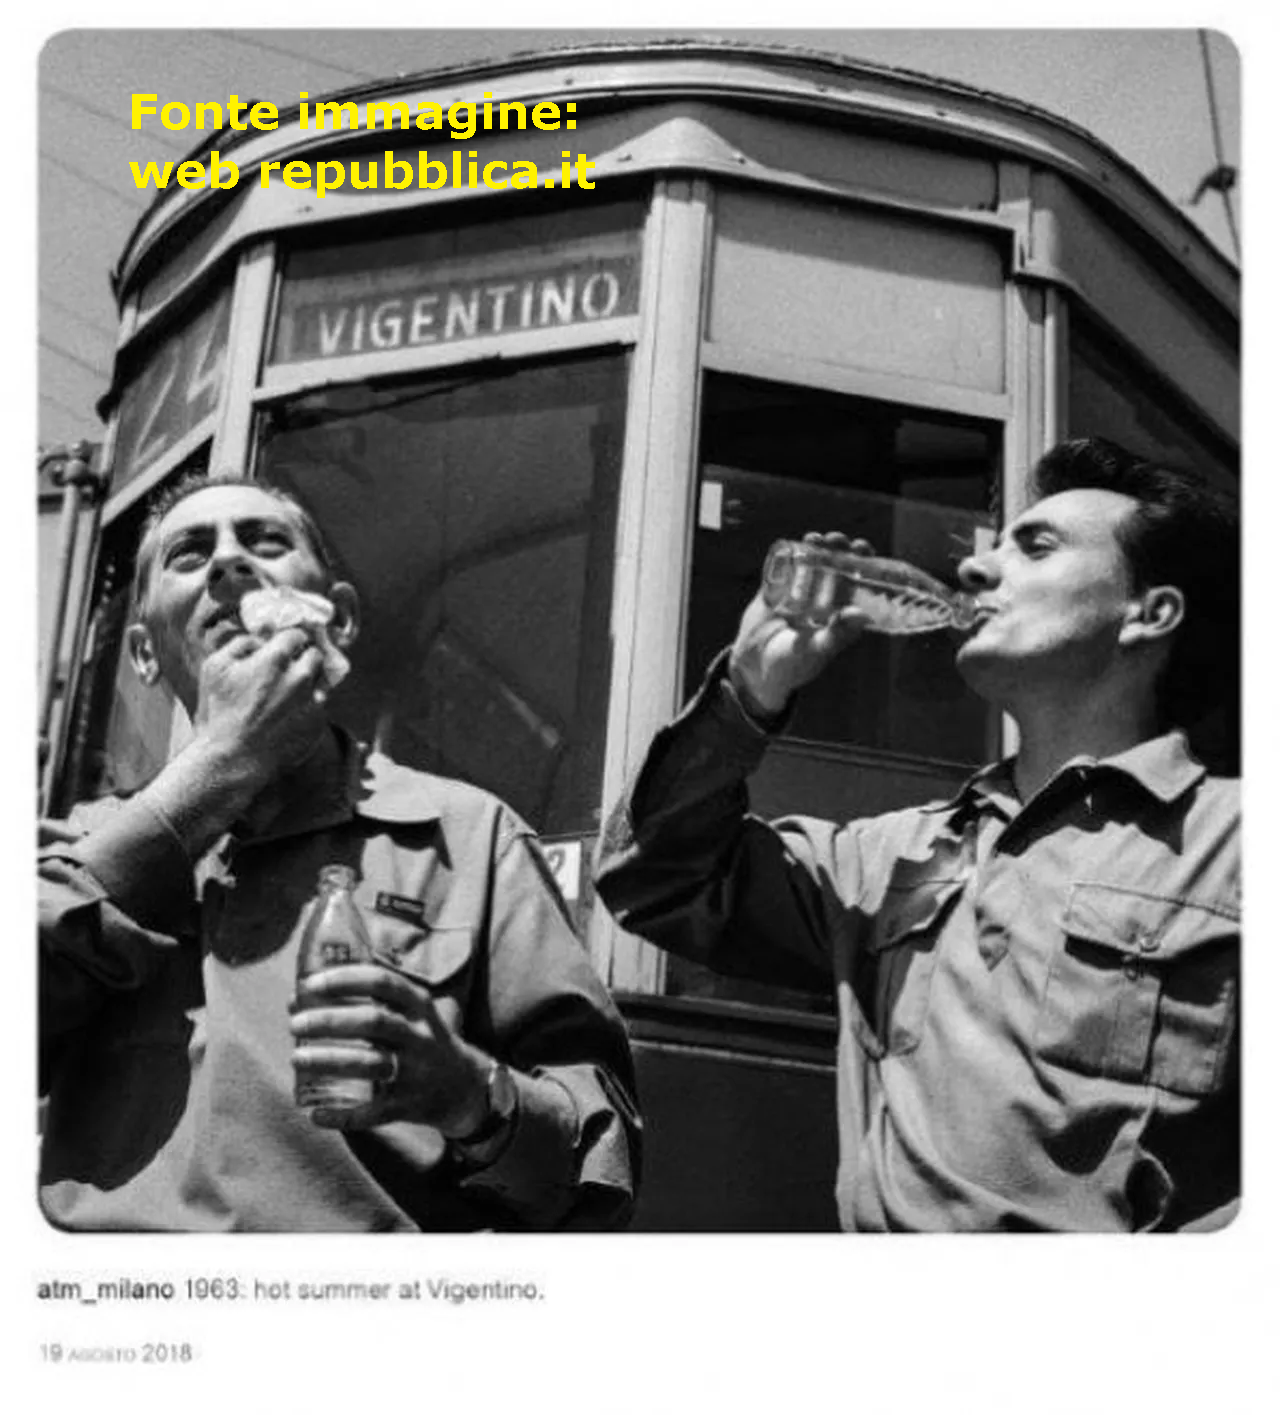 Vigentino 1963. Via Noto-Ripamonti, capolinea tram 24 (fonte immagine: web repubblica.it)